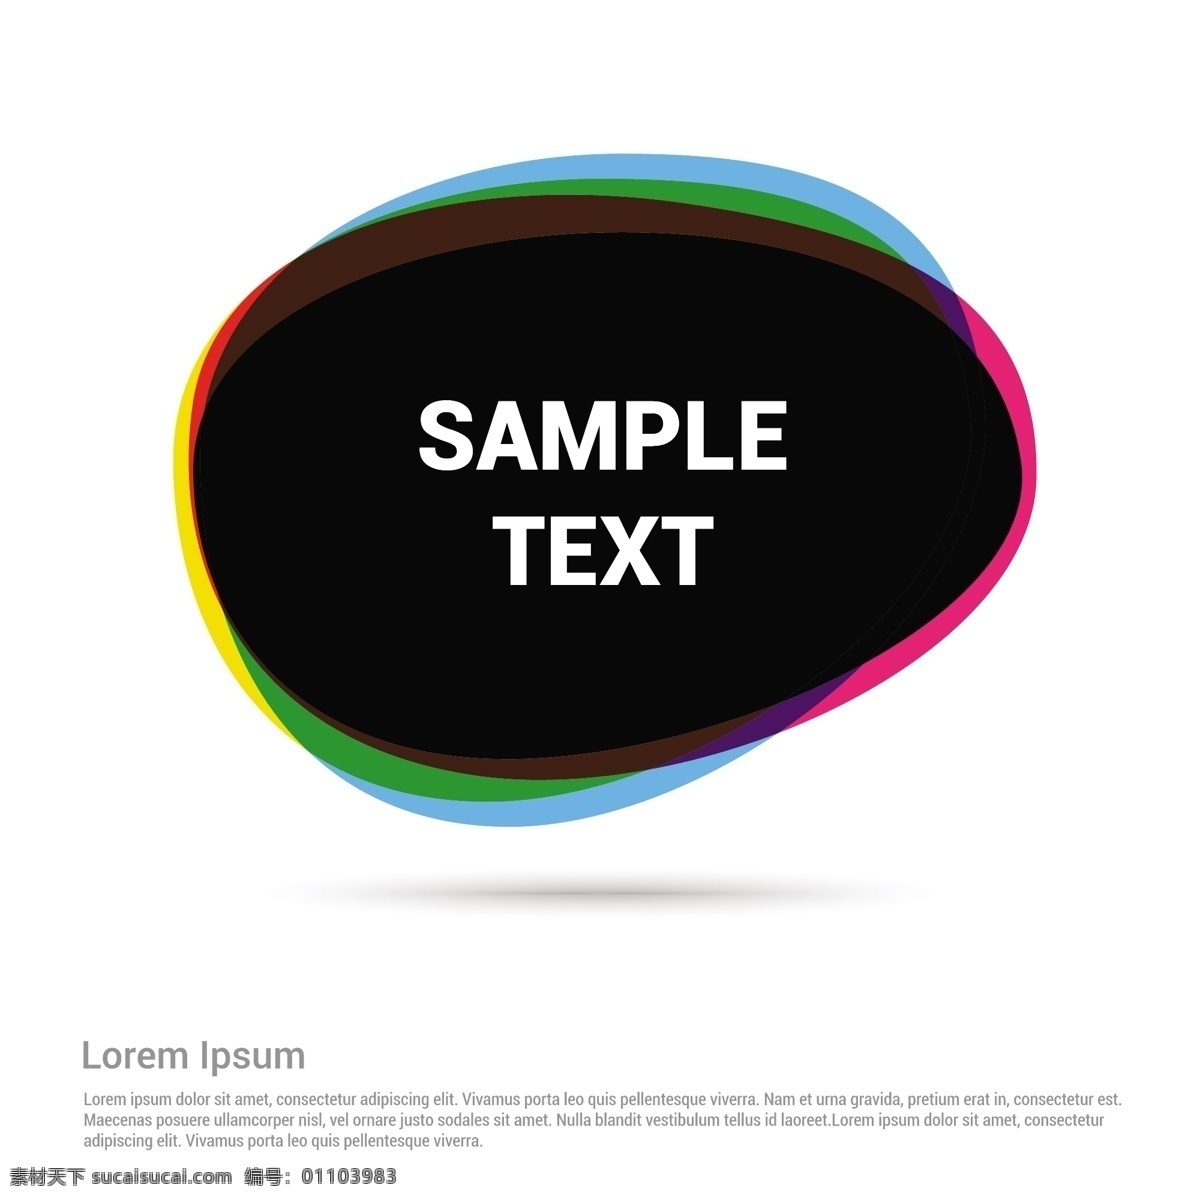 环形 语音 气泡 模板 抽象 语音气泡 图形 符号 通讯 平面设计 色彩 元素 现代 插图 语言 设计元素 抽象设计 圆形 白色